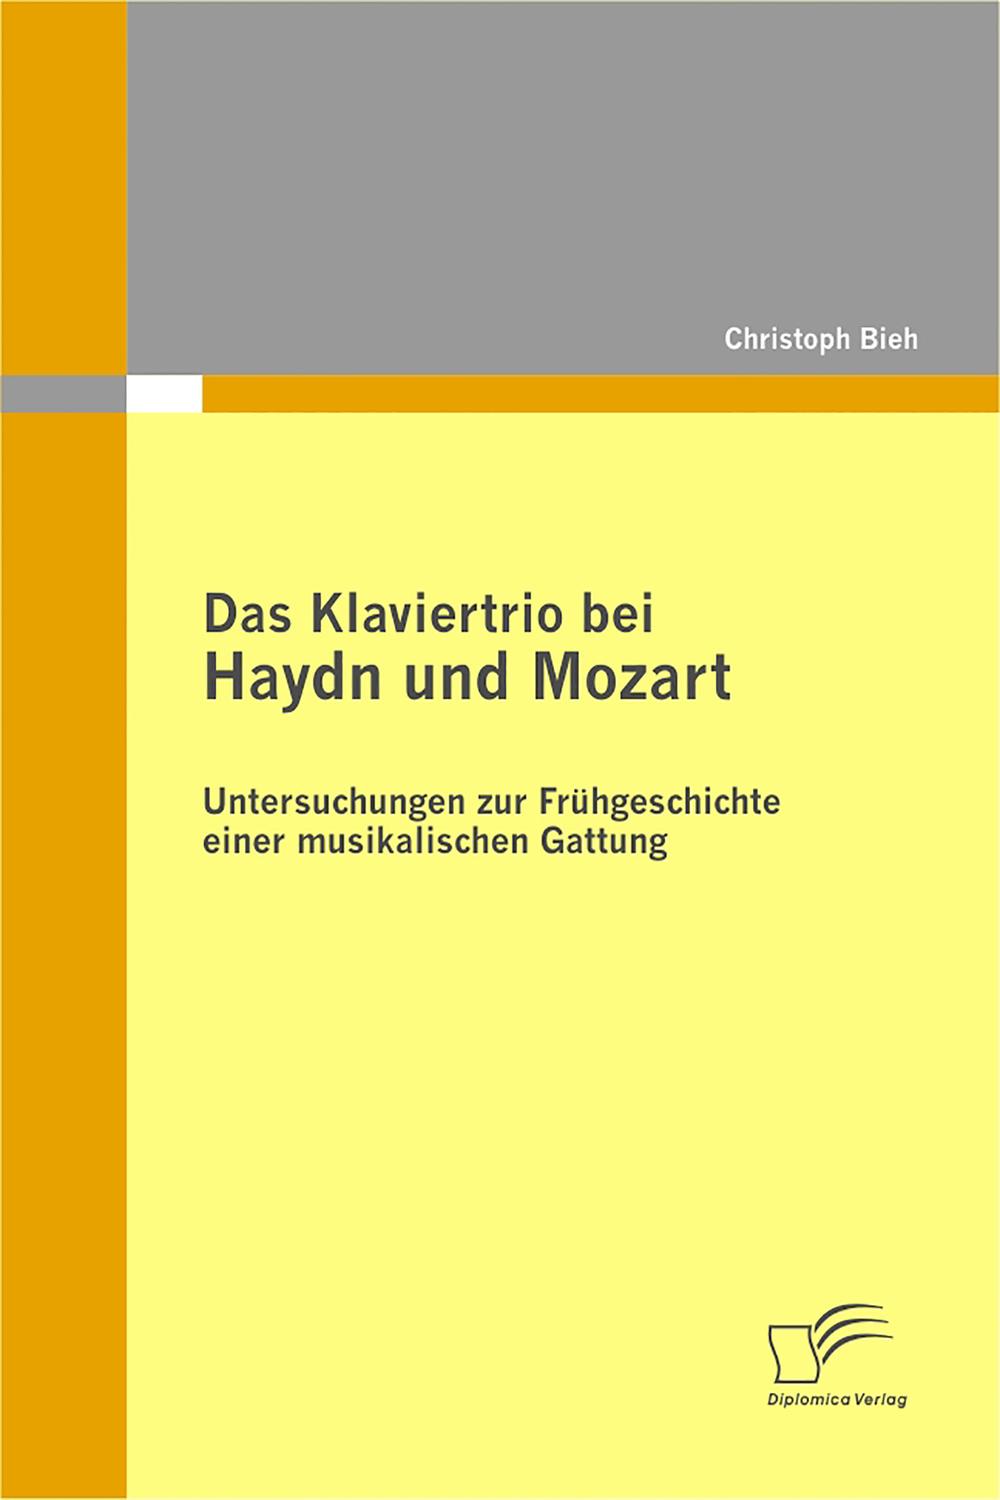 Das Klaviertrio bei Haydn und Mozart: Untersuchungen zur Frühgeschichte einer musikalischen Gattung - Christoph Biehl